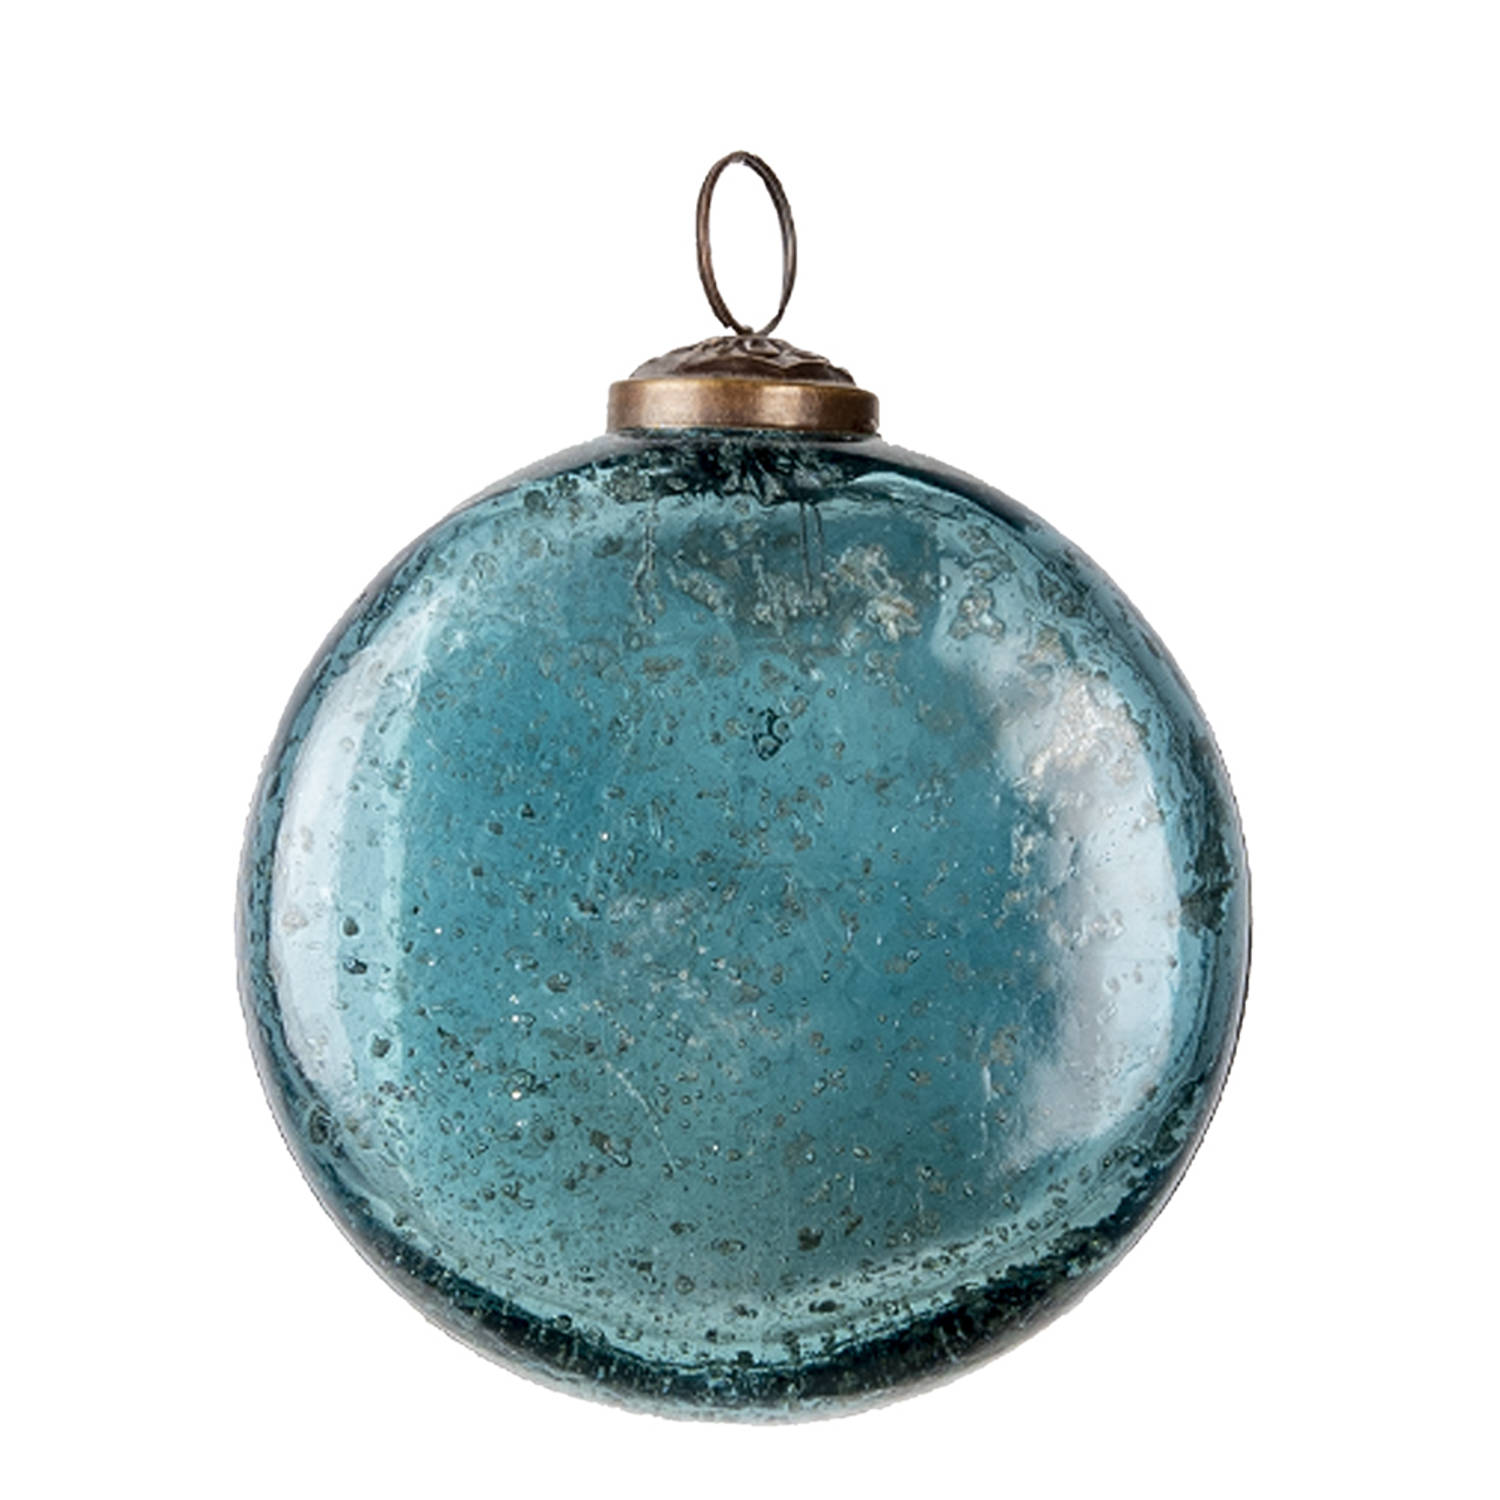 HAES DECO - Kerstbal - Formaat Ø 10x10 cm - Kleur Blauw - Materiaal Glas - Kerstversiering, Kerstdecoratie, Decoratie Hanger, Kerstboomversiering